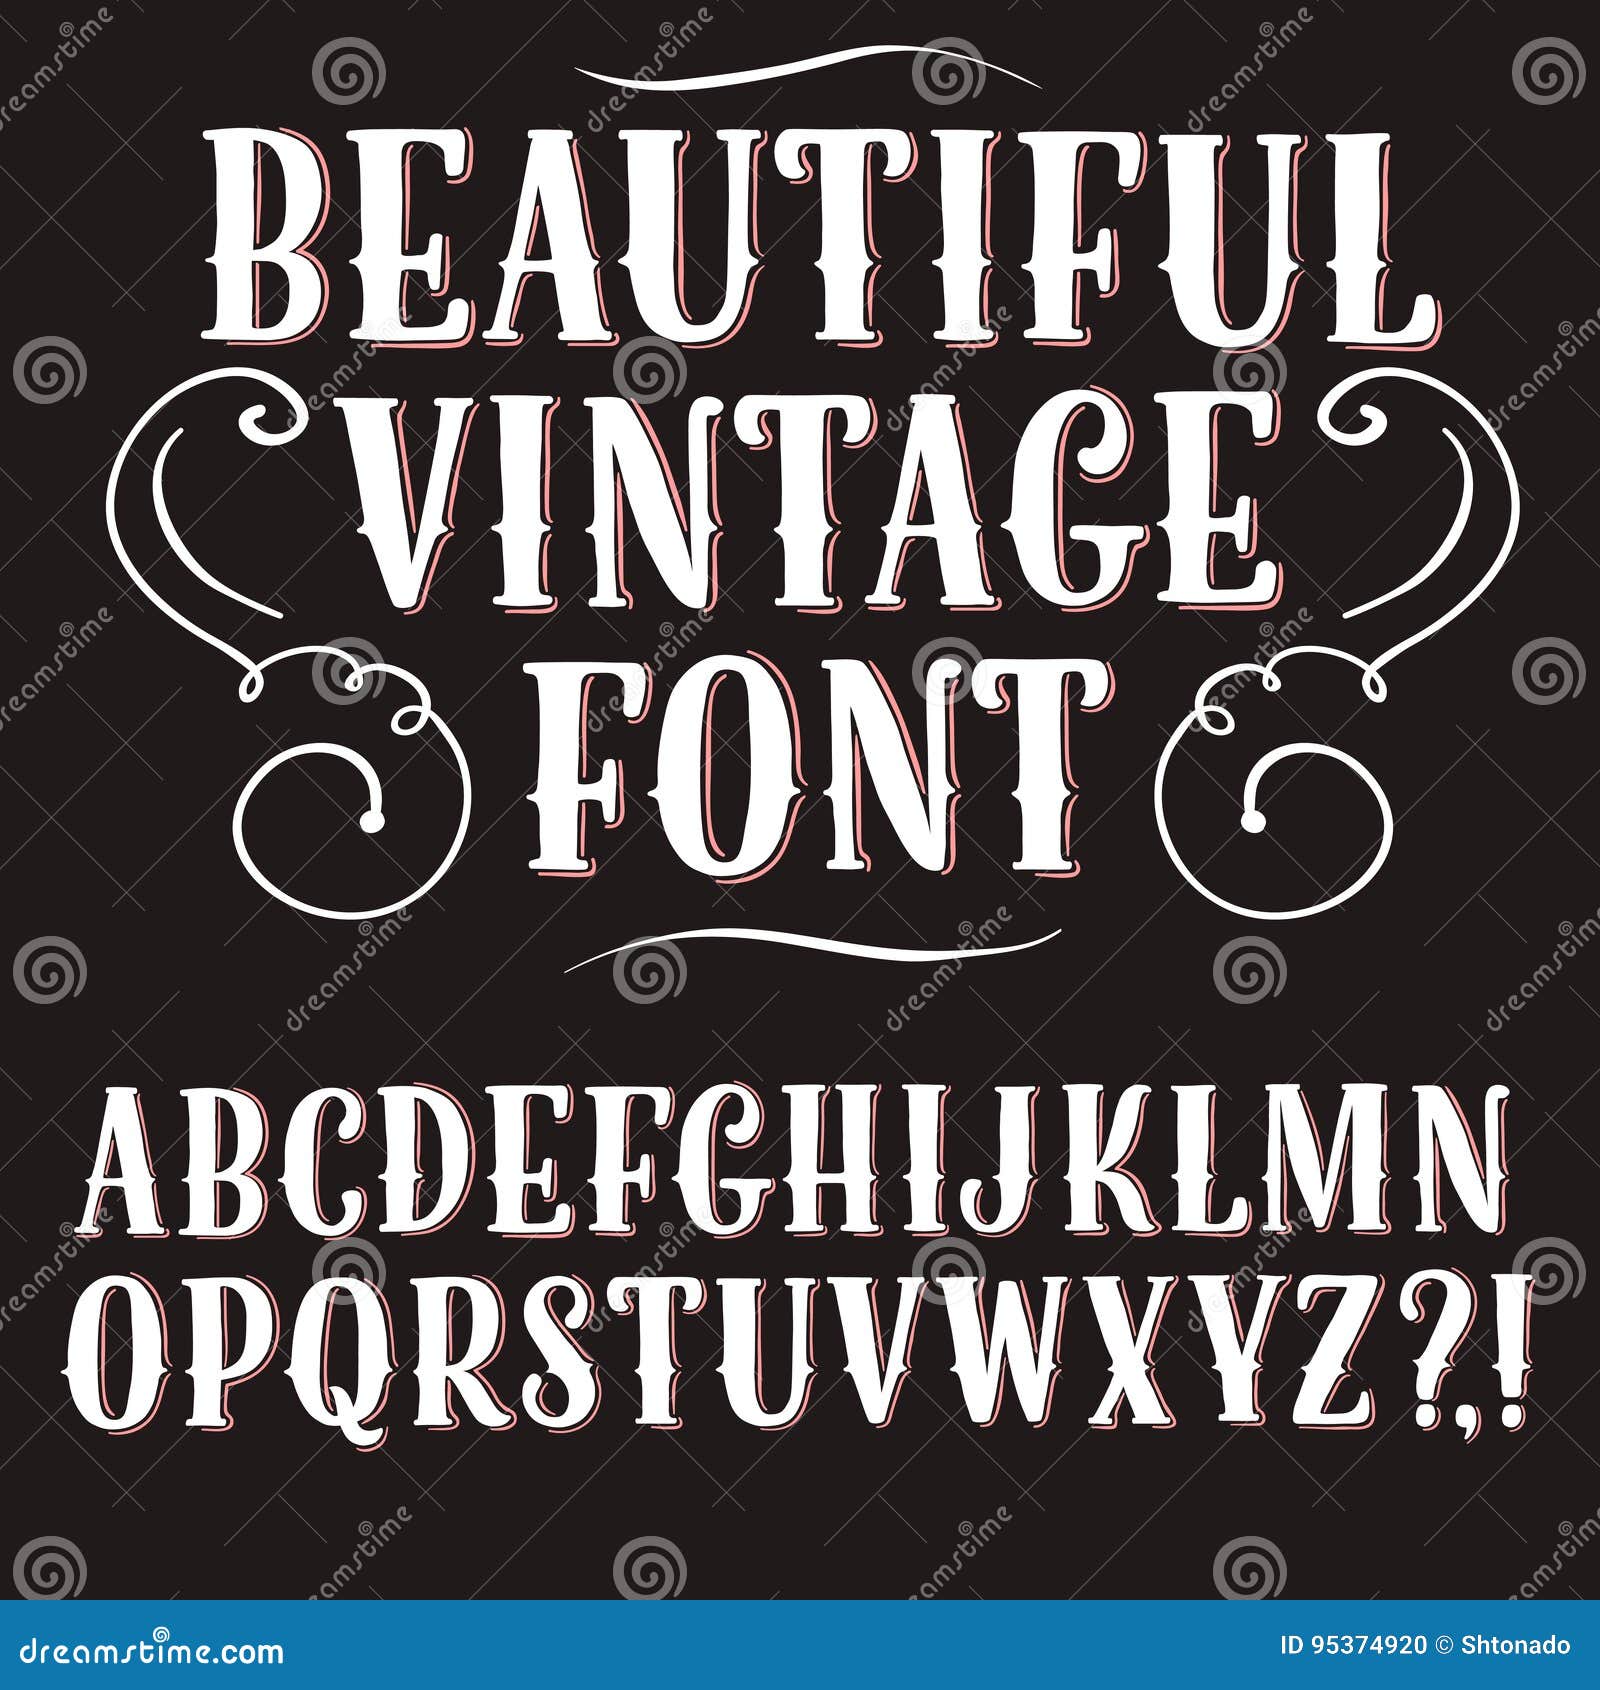 Vintage decorative font stock illustration. Illustration of book - 95374920